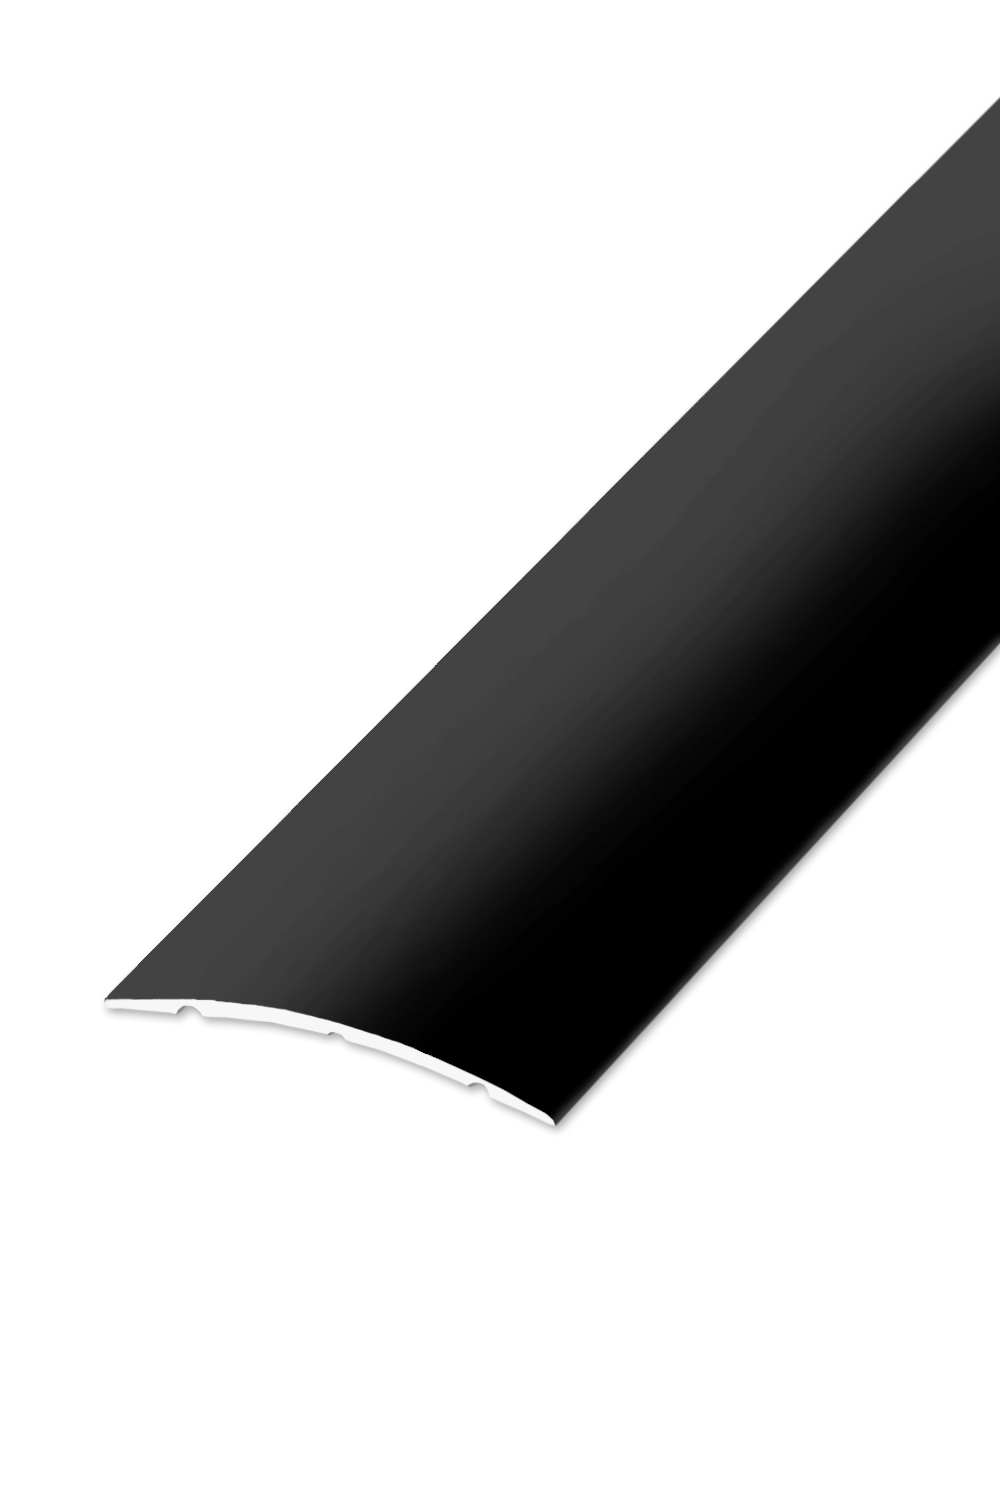 Přechodová lišta STANDARD 32 - Černá Matná 270 cm